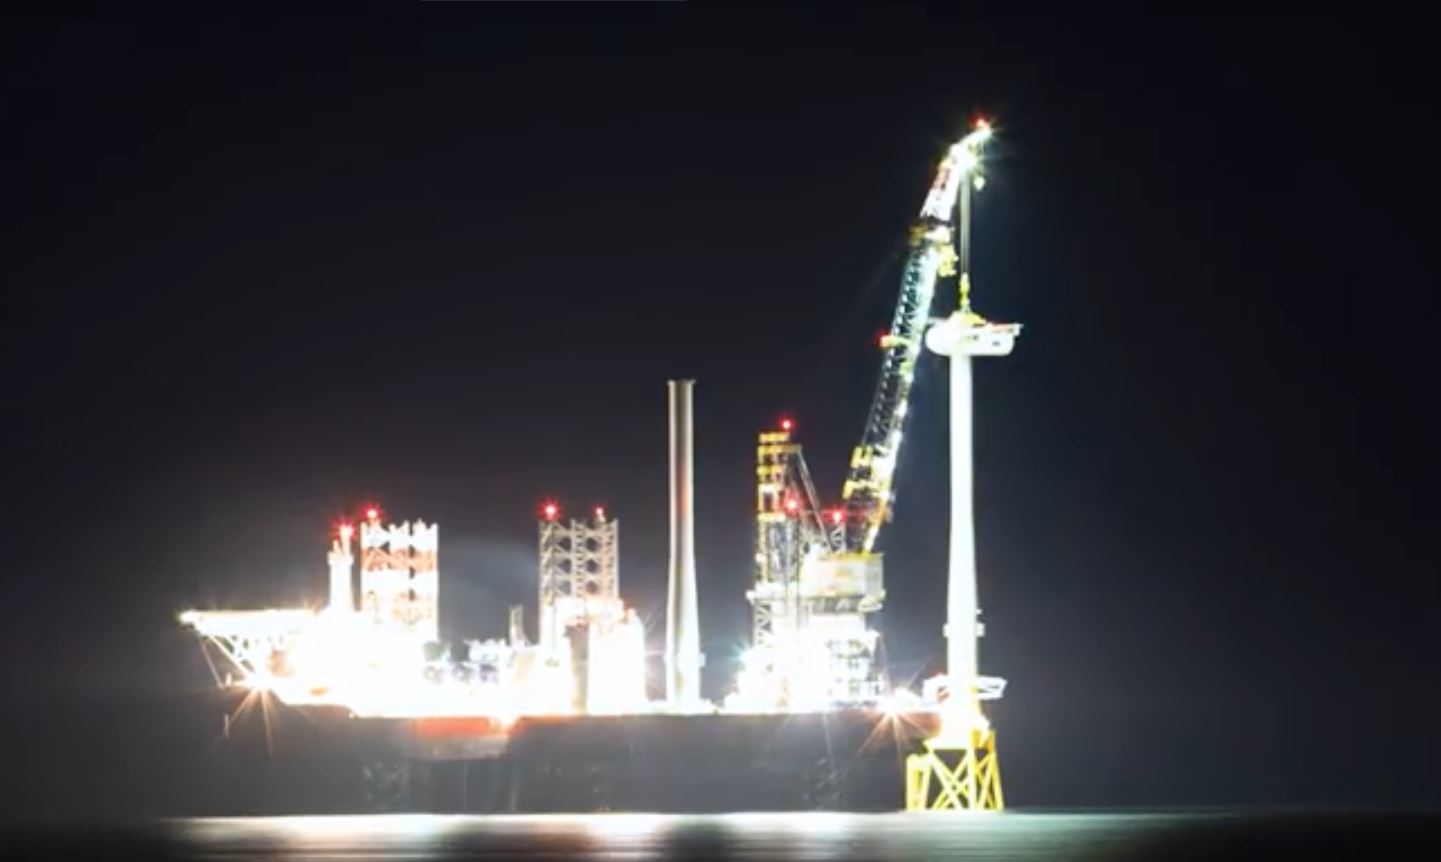 Aberdeen Offshore Wind Farm work at night.